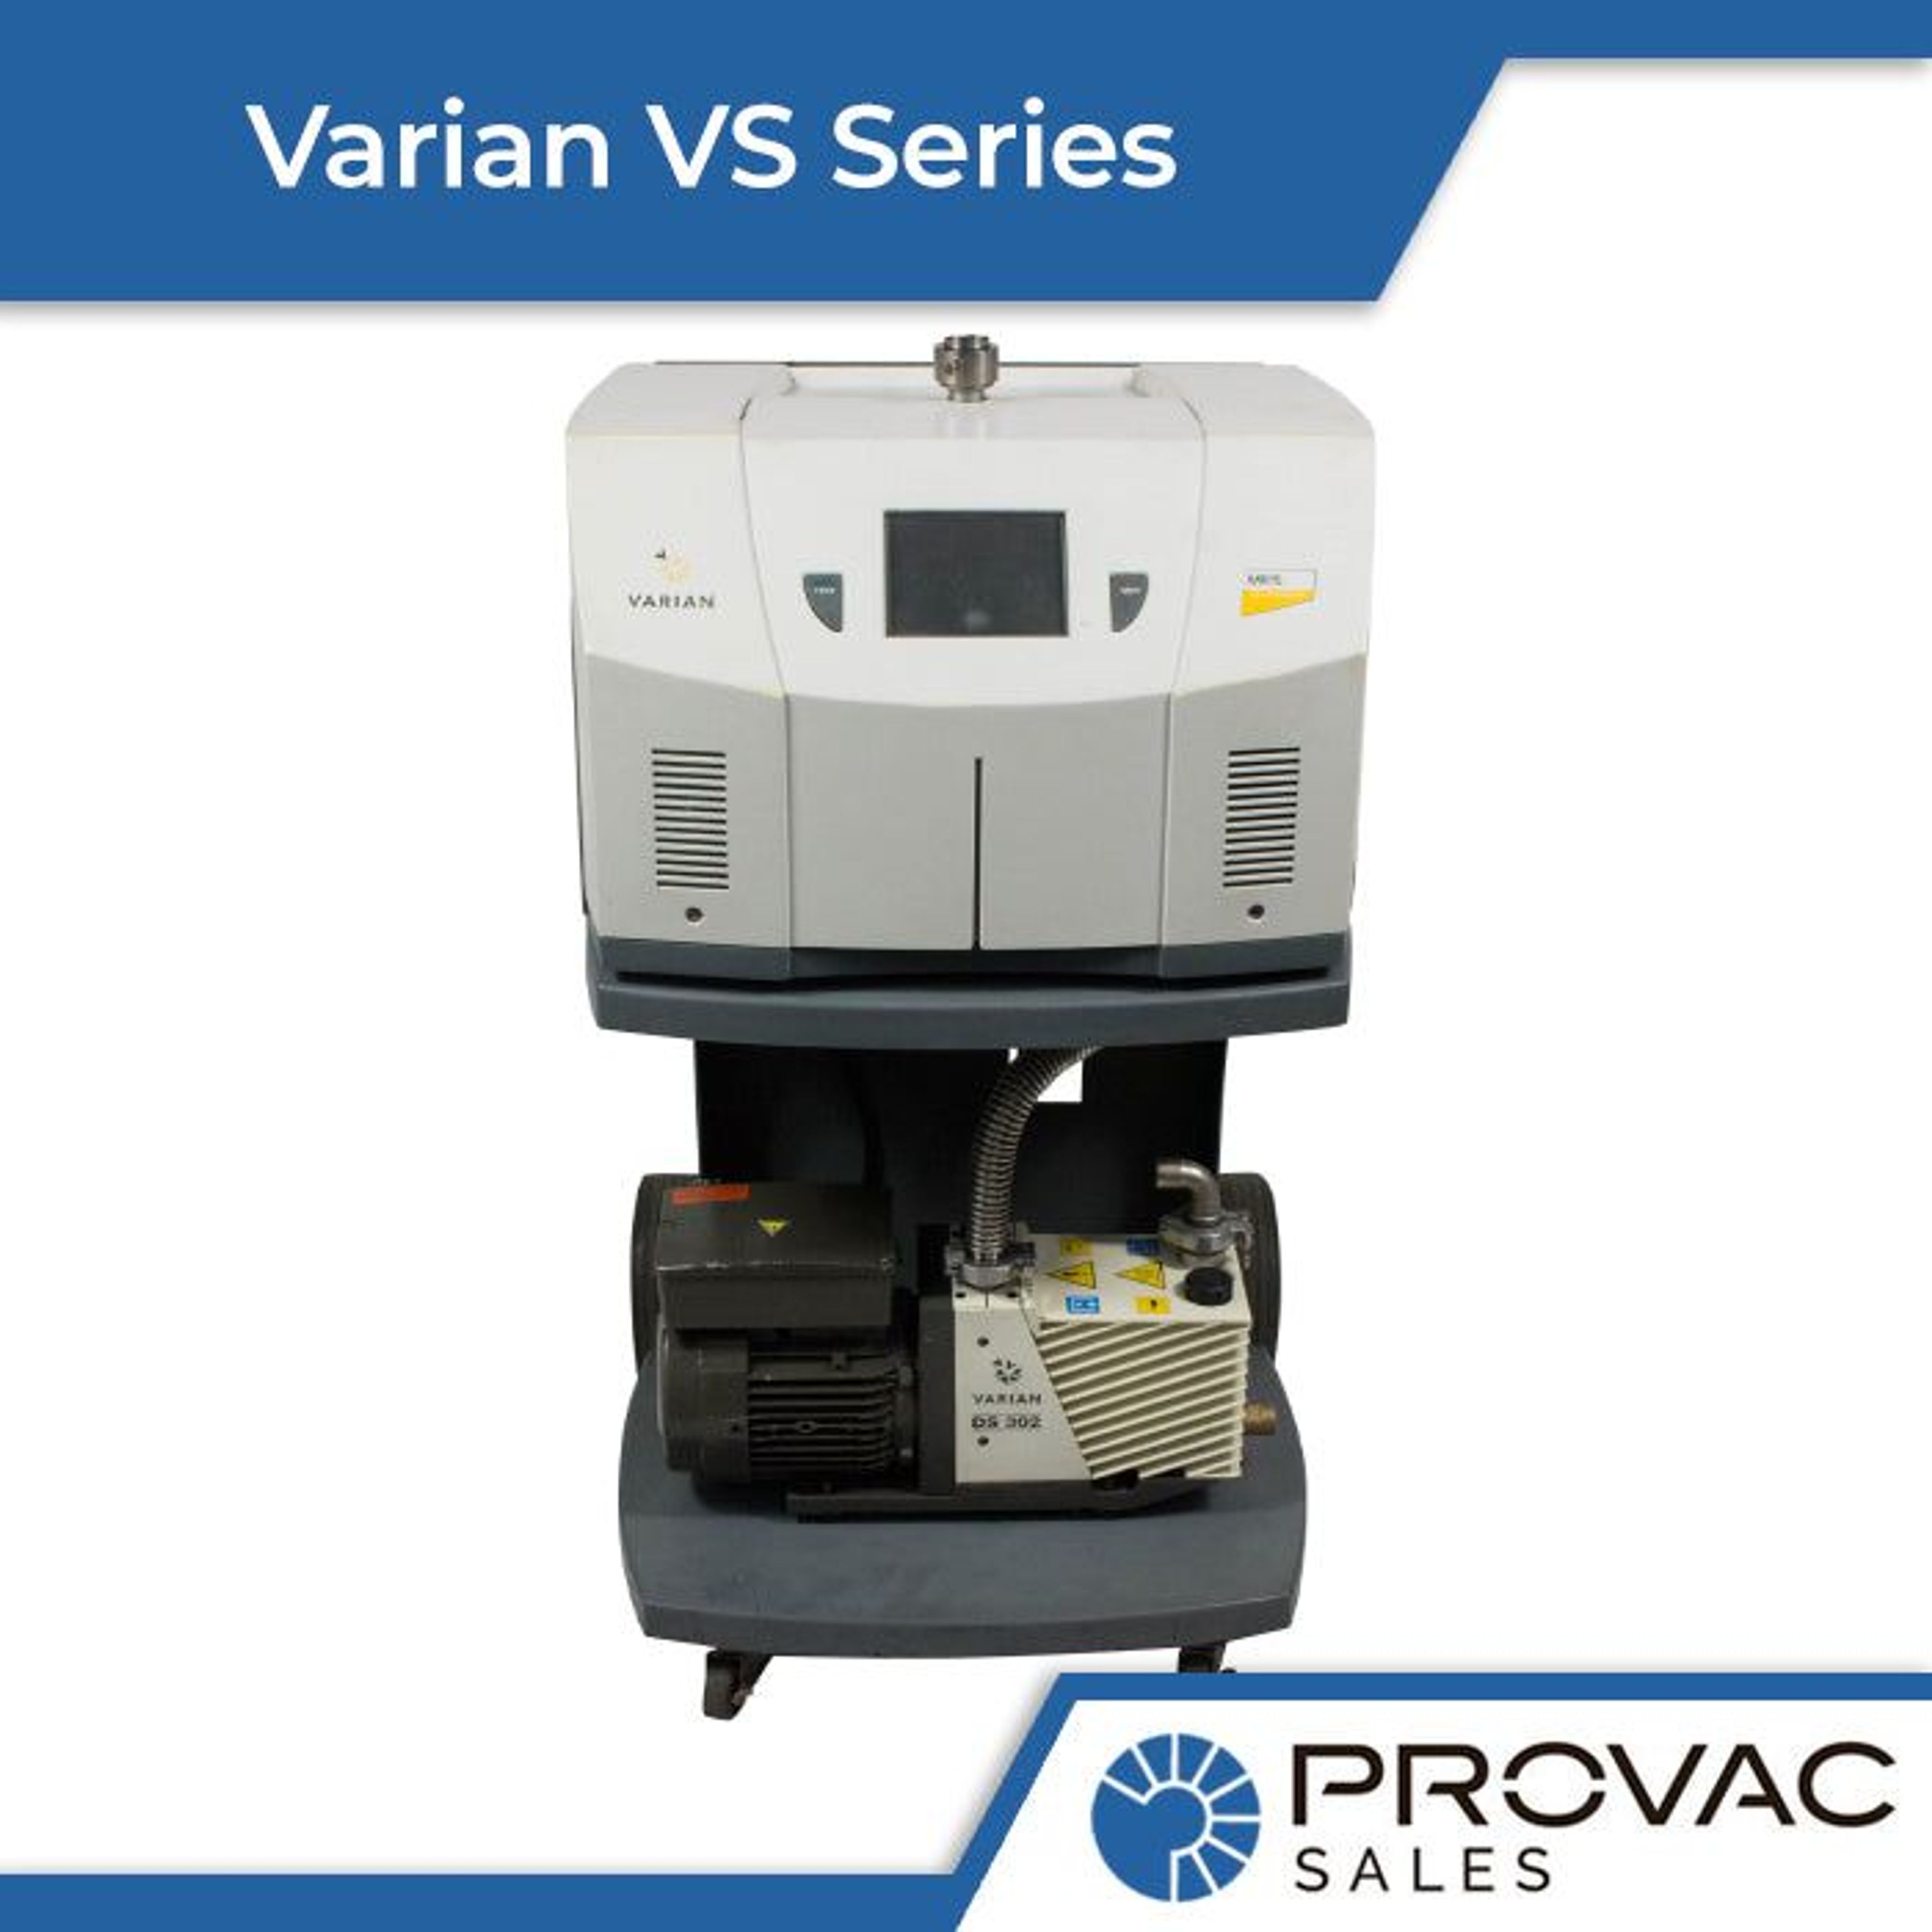 Varian VS Series of Helium Leak Detectors Background